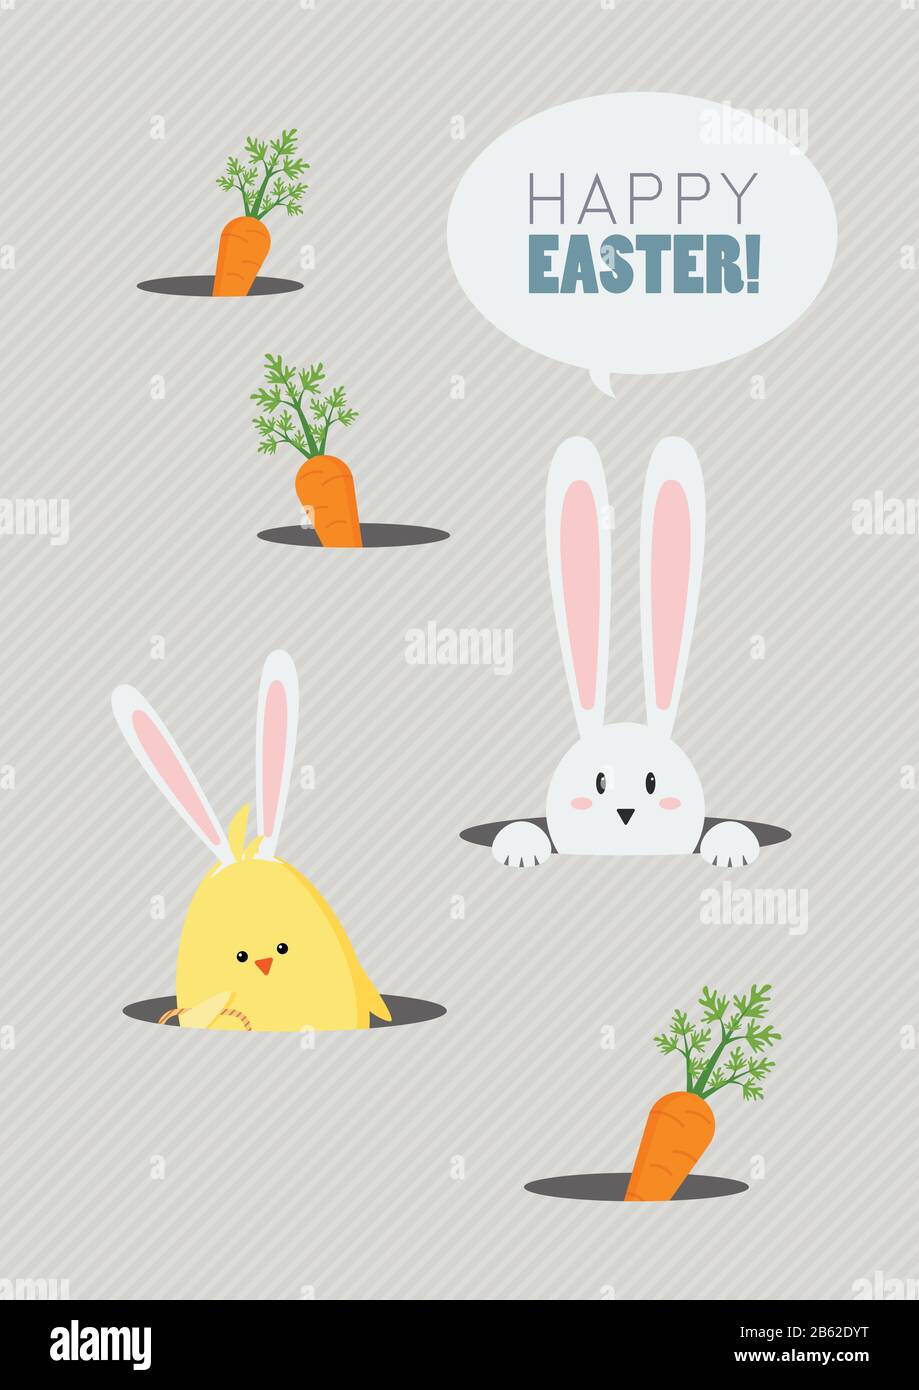 Buon Saluto Di Pasqua Cartone Carino. Biglietto di auguri di Pasqua Illustrazione Vettoriale